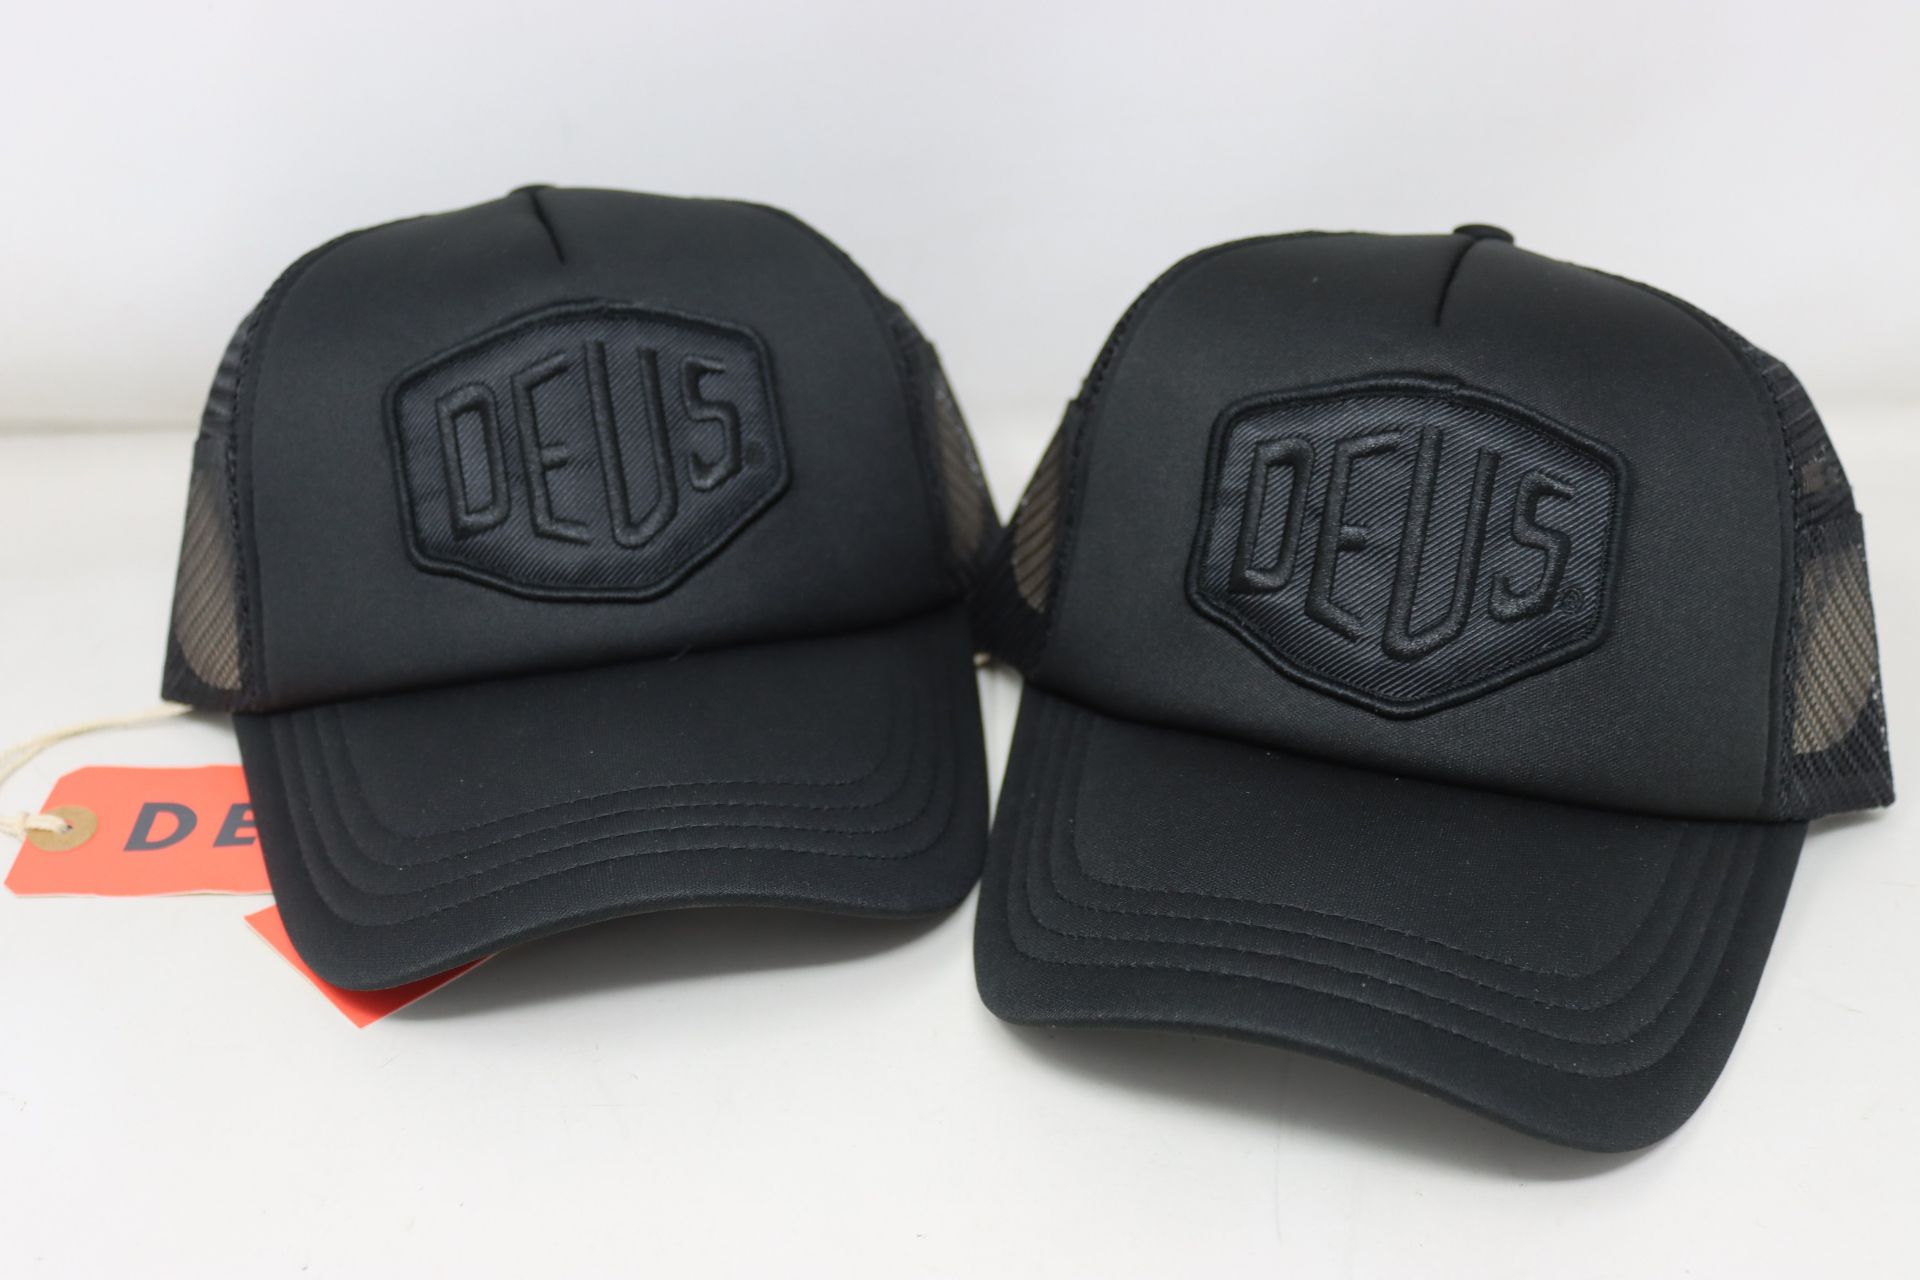 Fifteen as new Deus Ex Machina Baylands trucker caps in black (RRP £25 each).